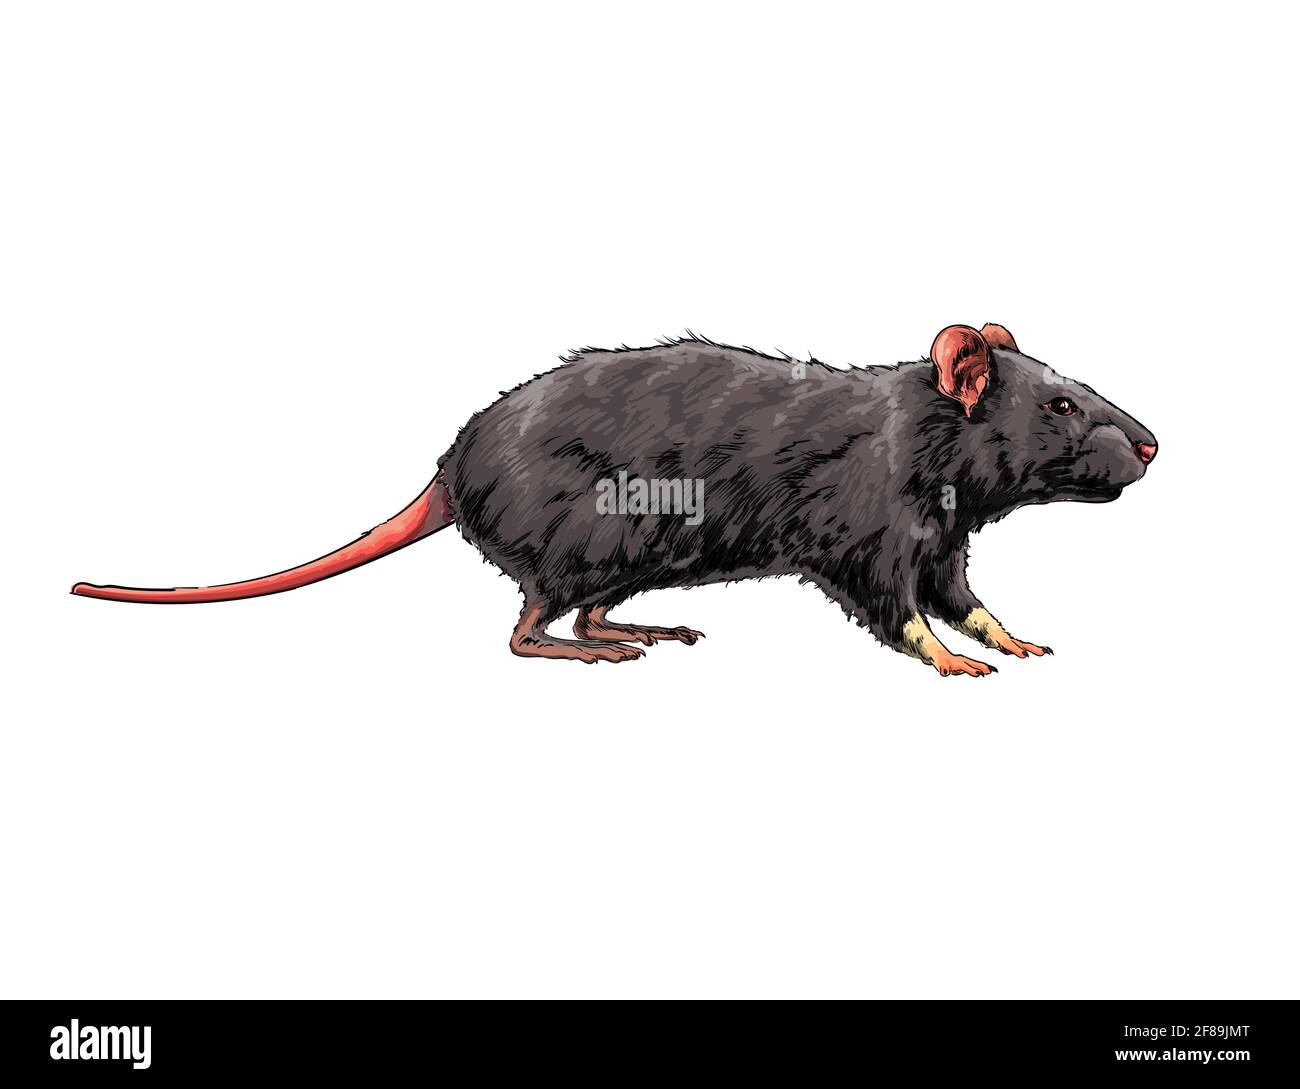 Rat Sketch Images - Free Download on Freepik